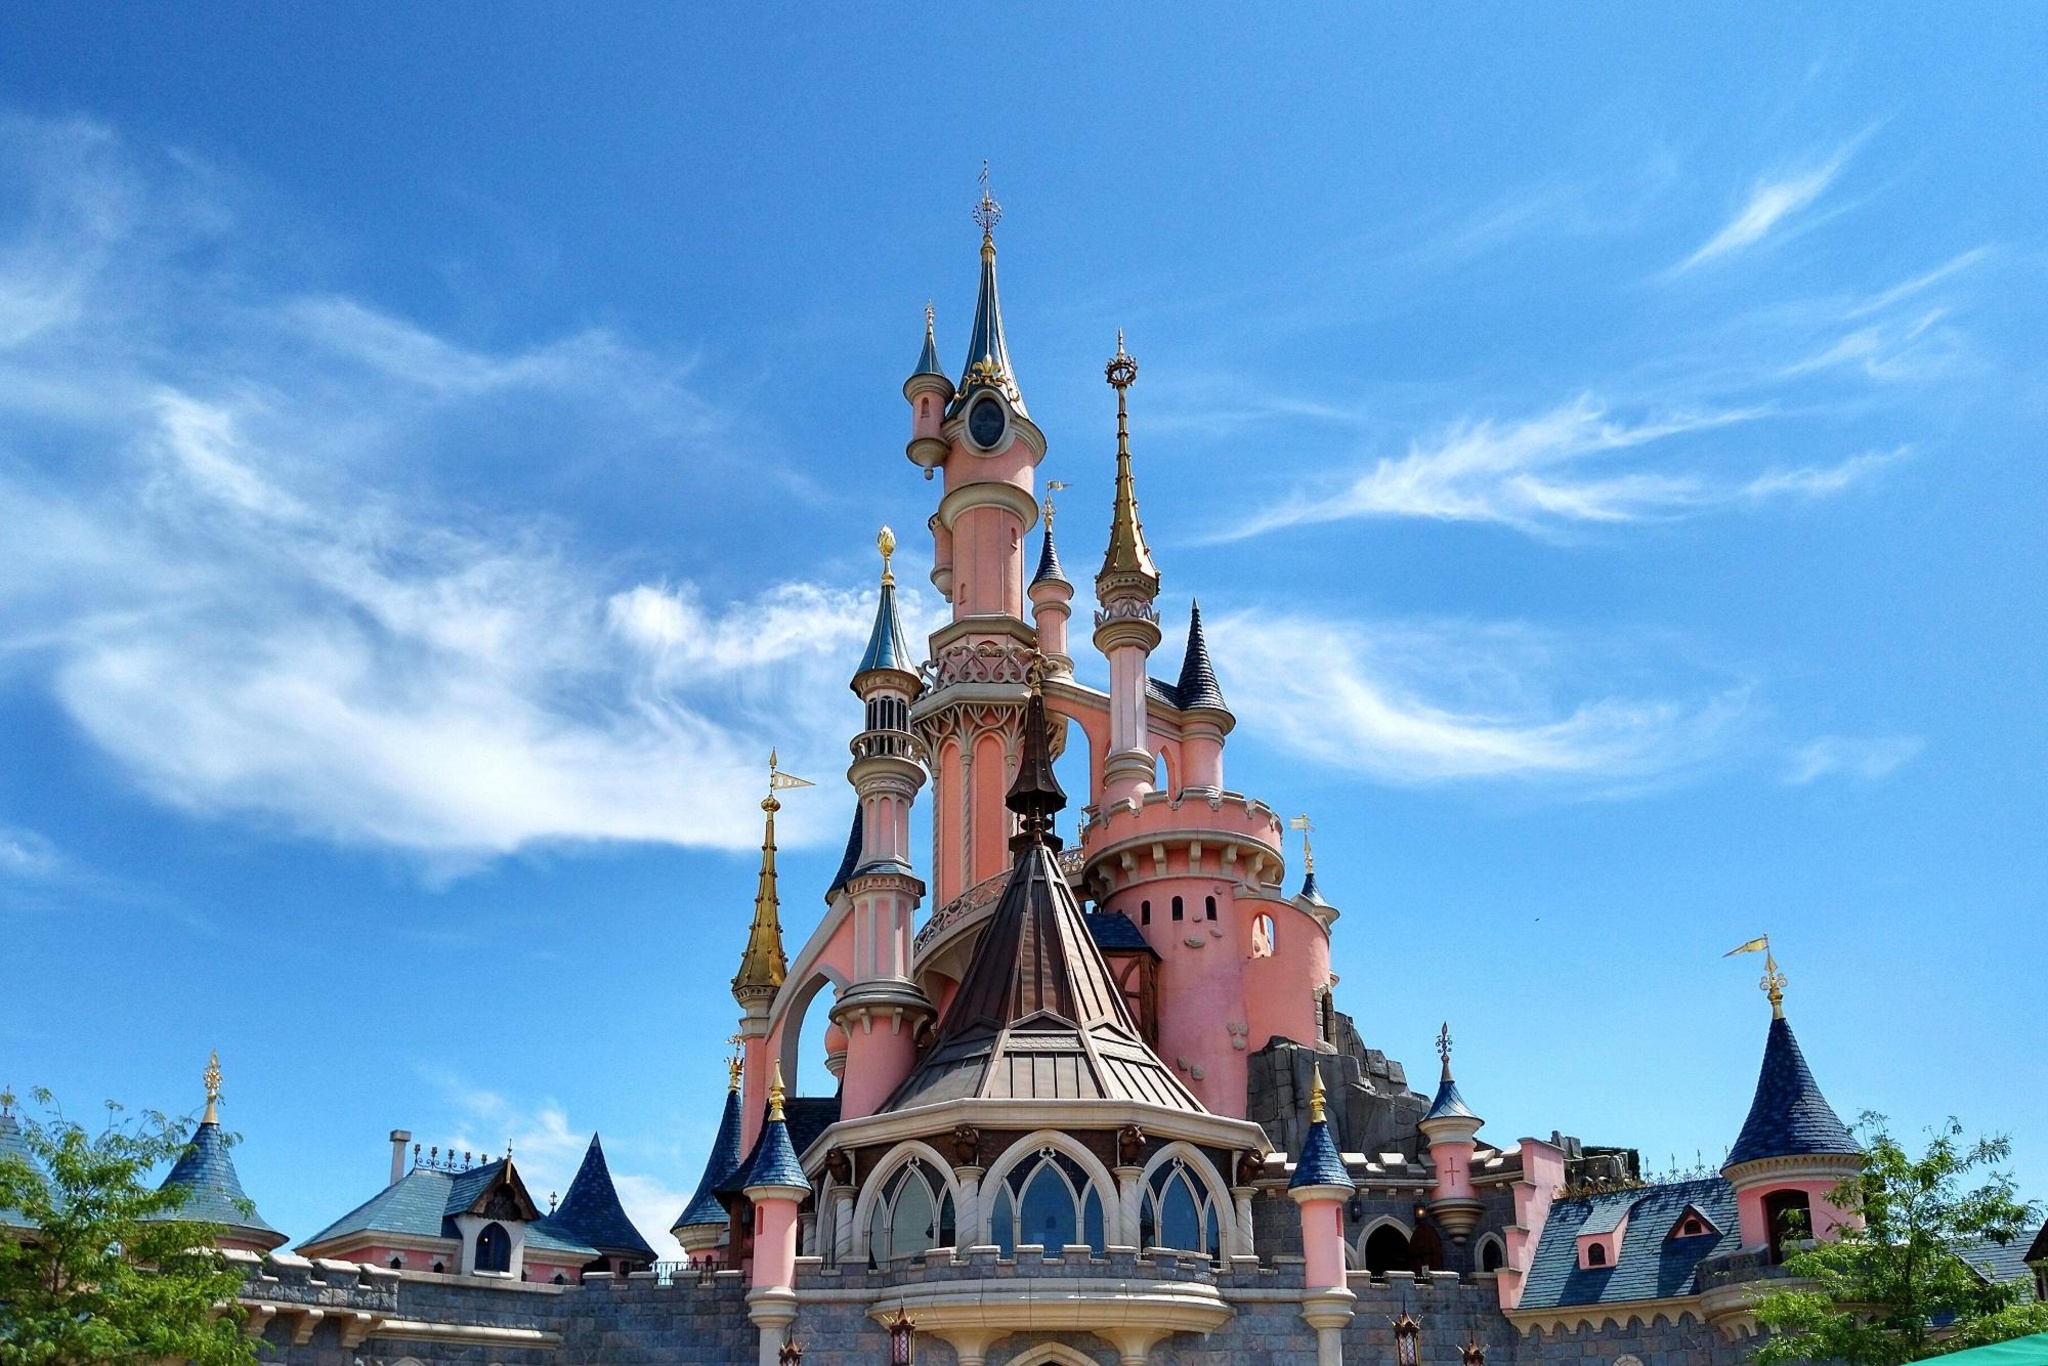 Wiedereröffnung von Disneyland Paris verschoben